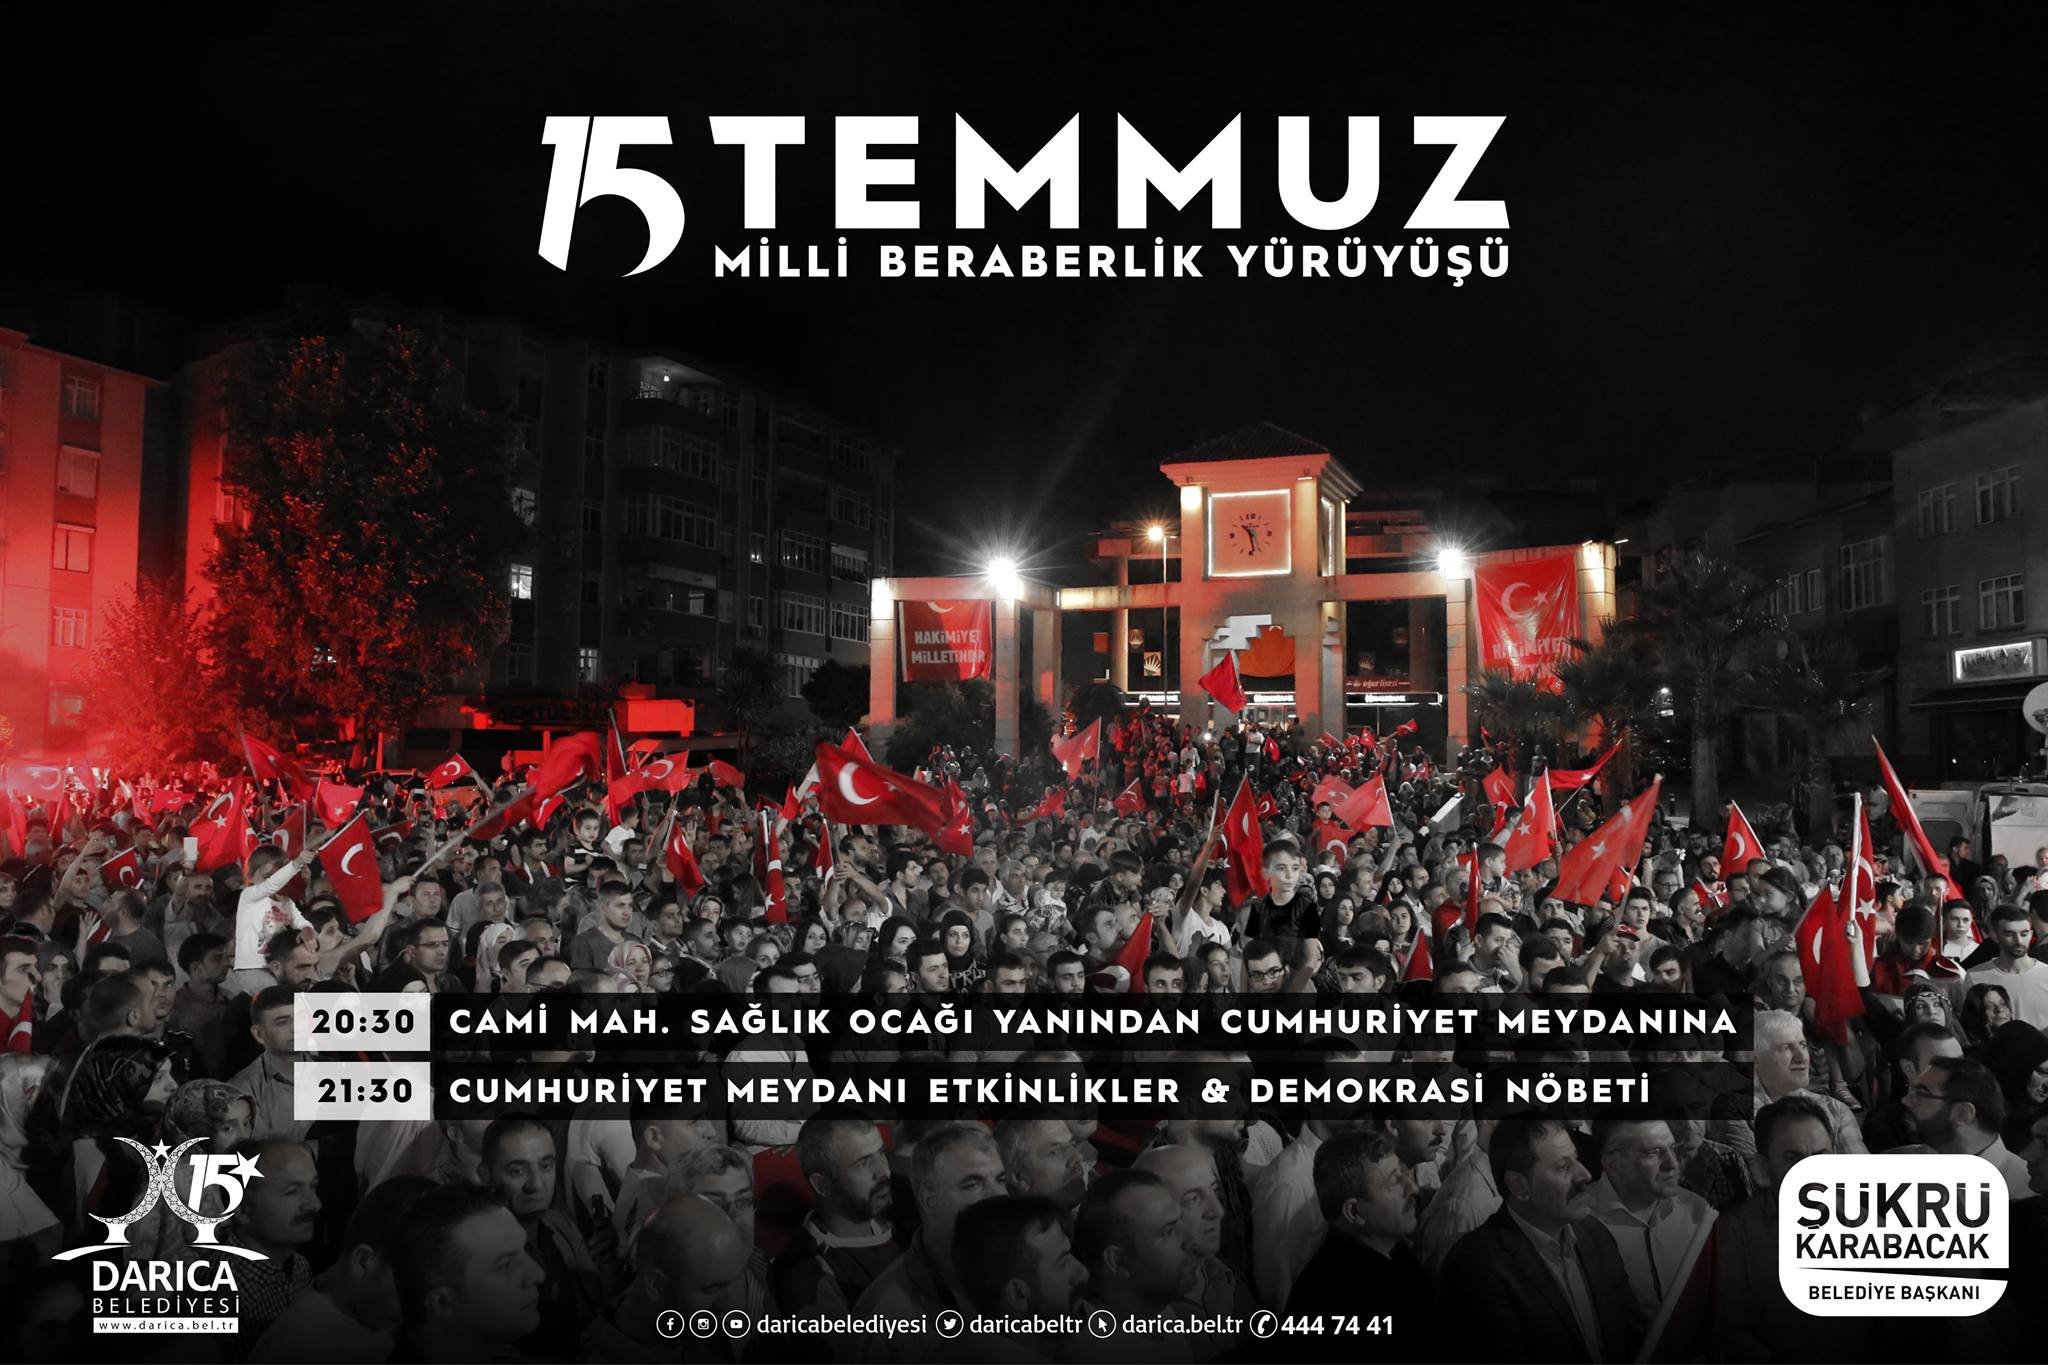 Darıca'da Milli Beraberlik Yürüyüşü düzenlenecek!